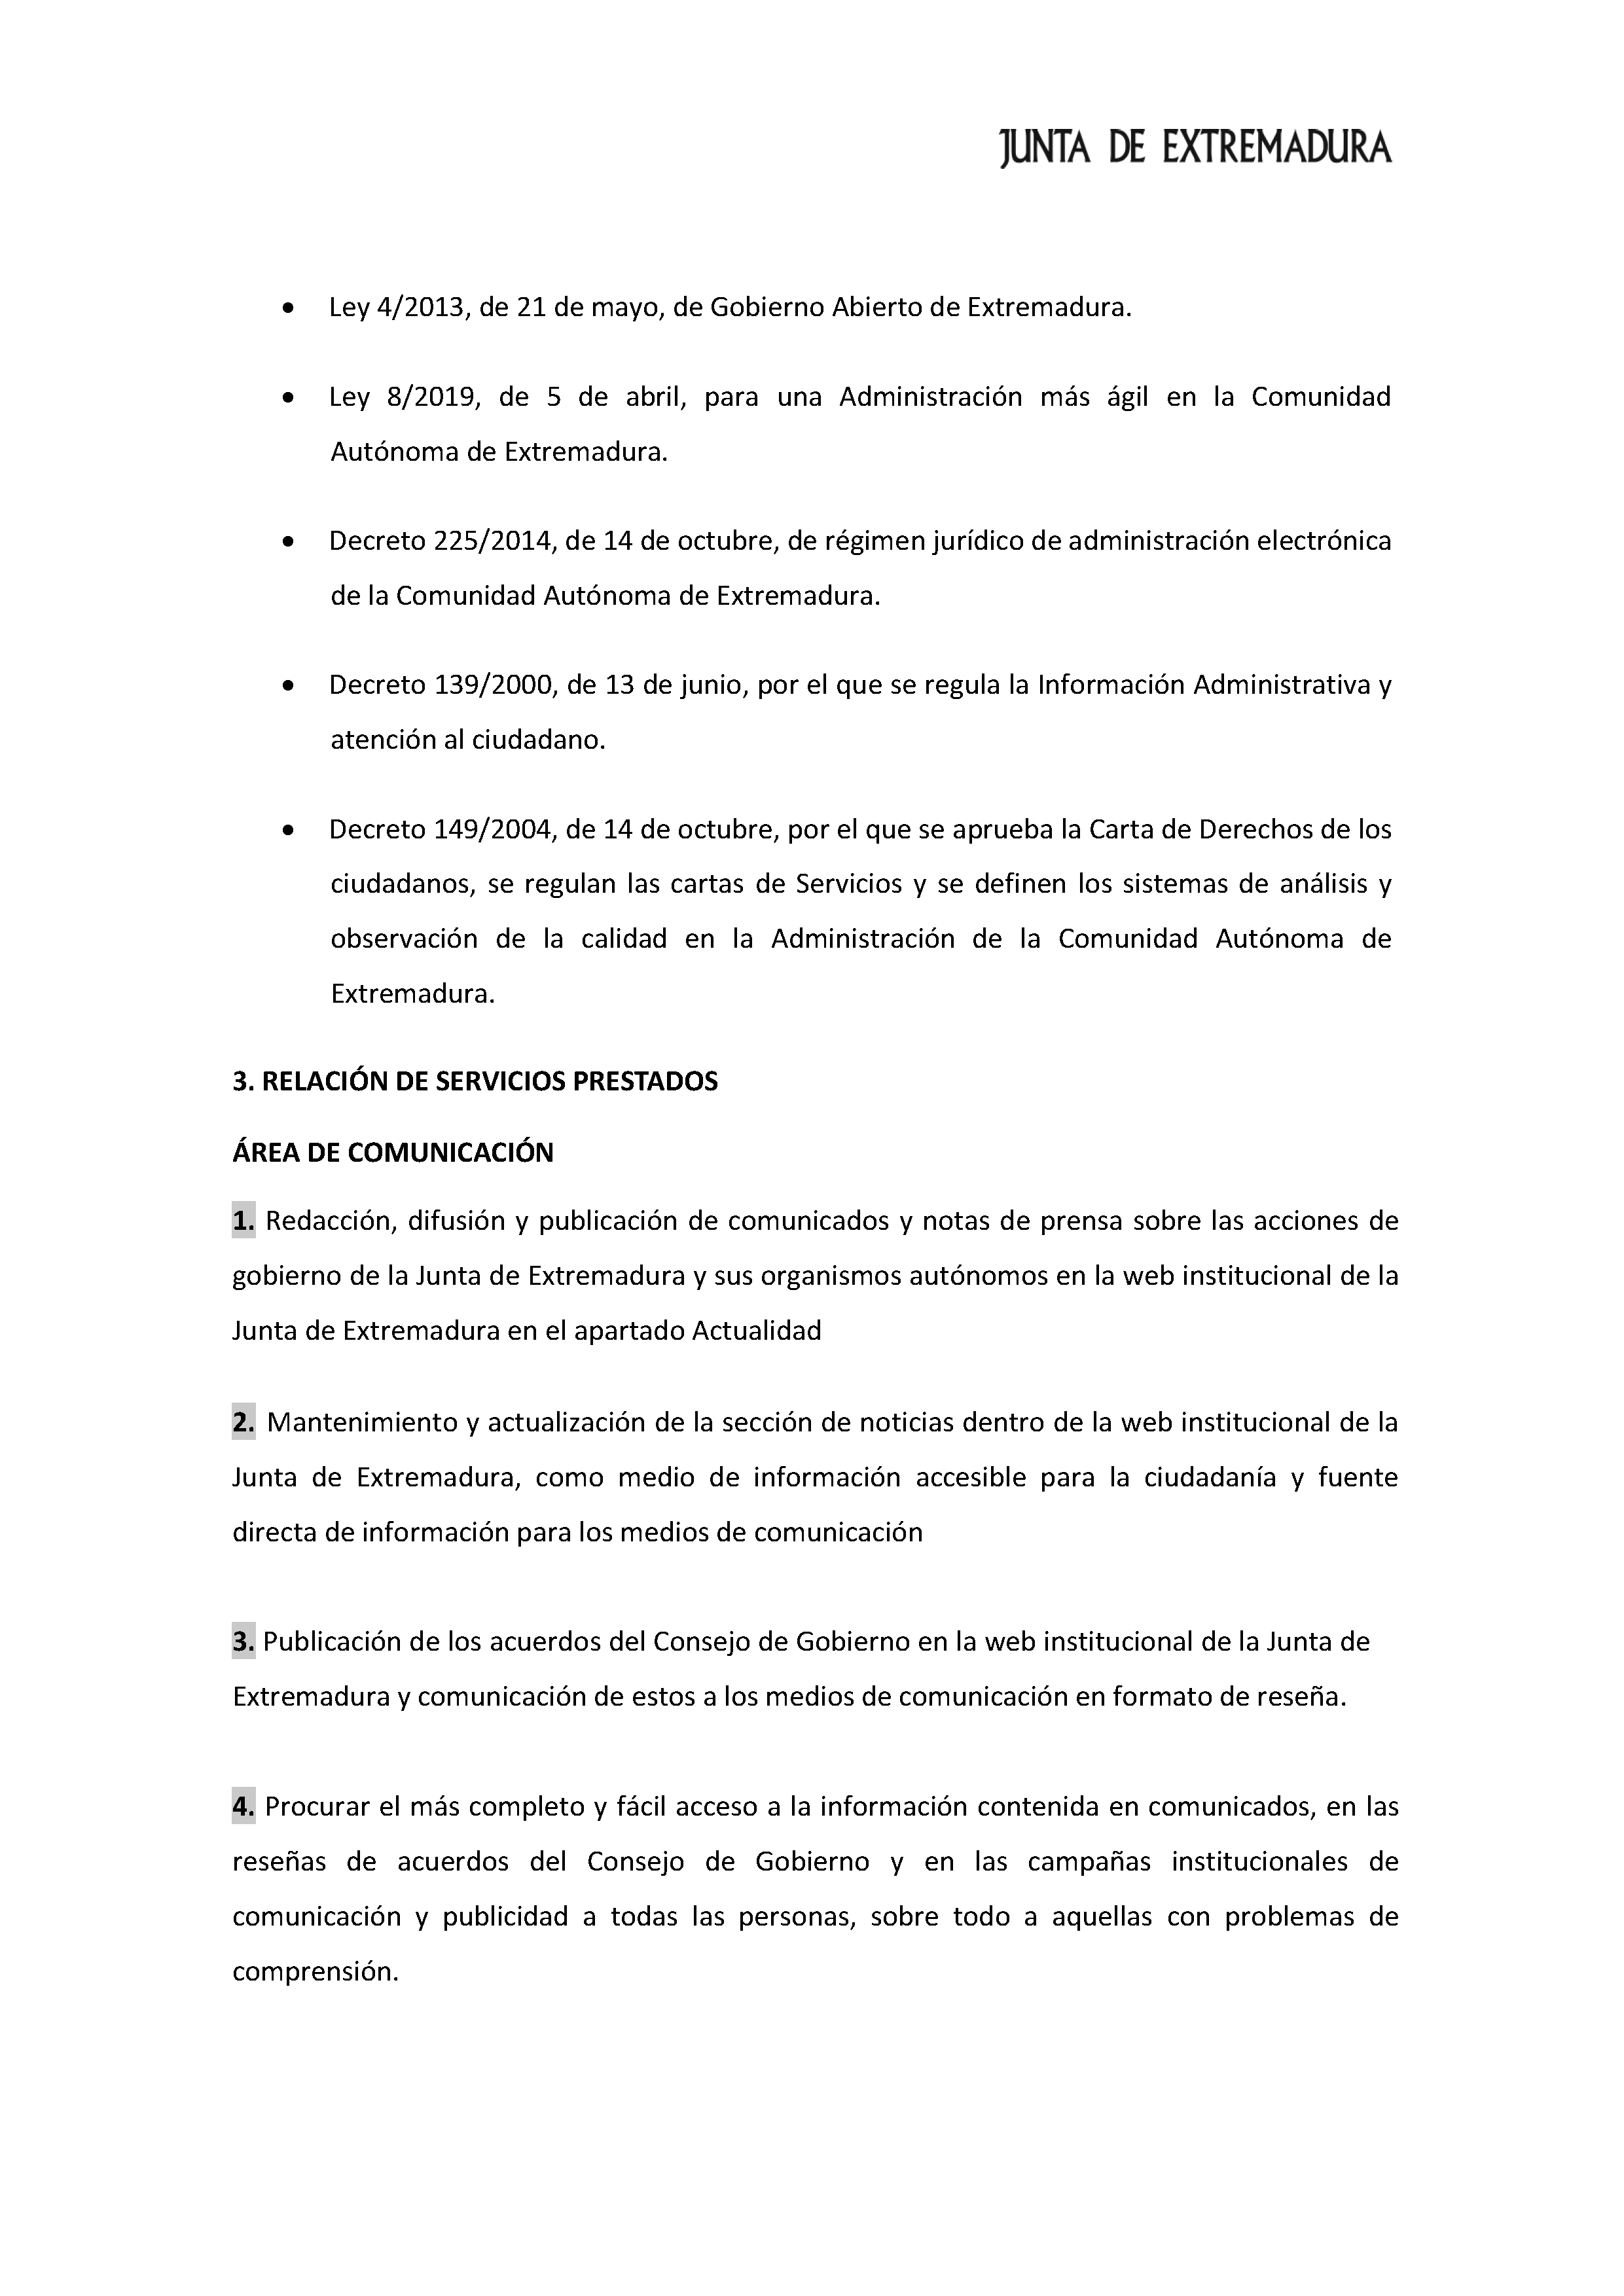 CARTA DE SERVICIOS Pag 7